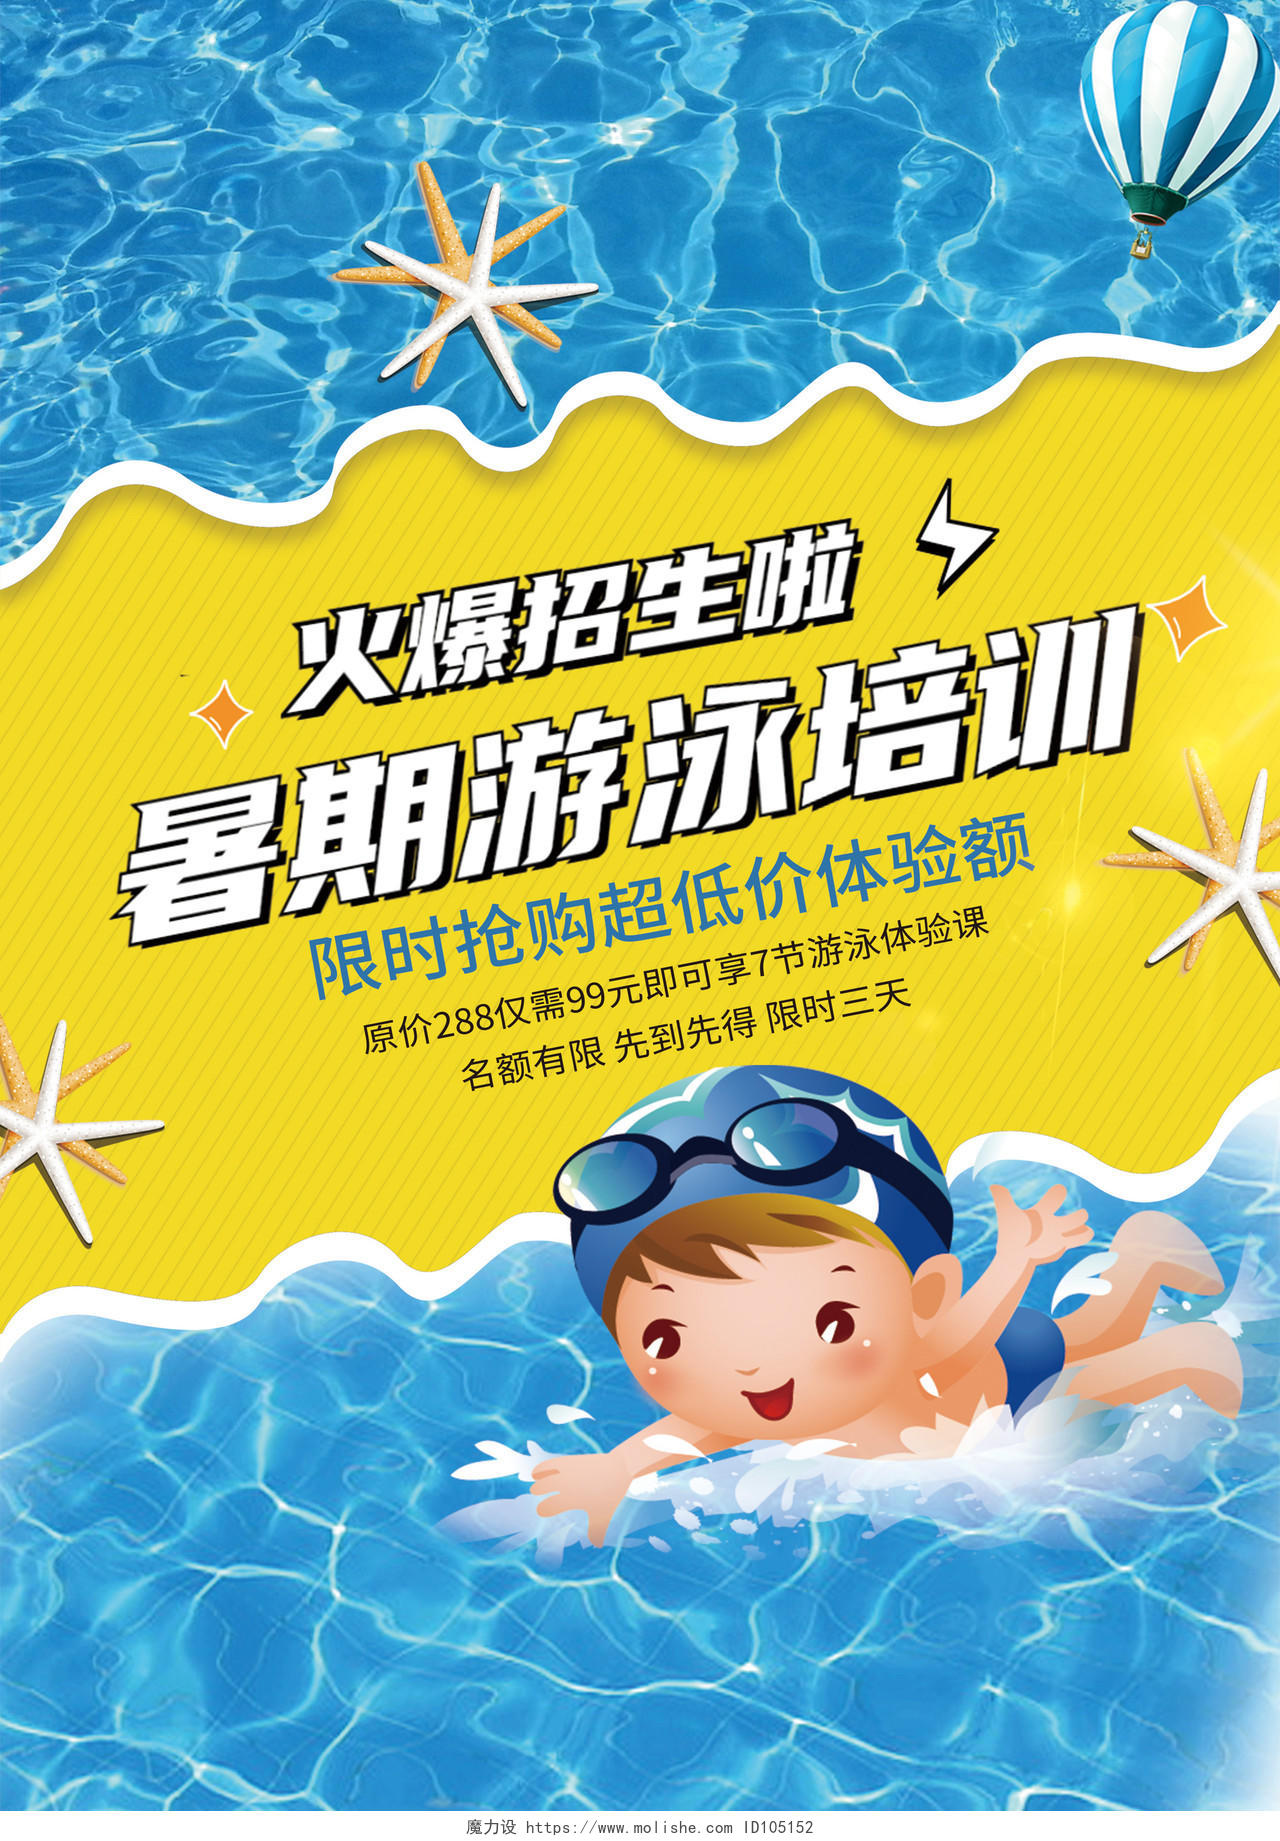 蓝黄色卡通暑期游泳培训暑假班招生宣传单游泳暑假班招生宣传单